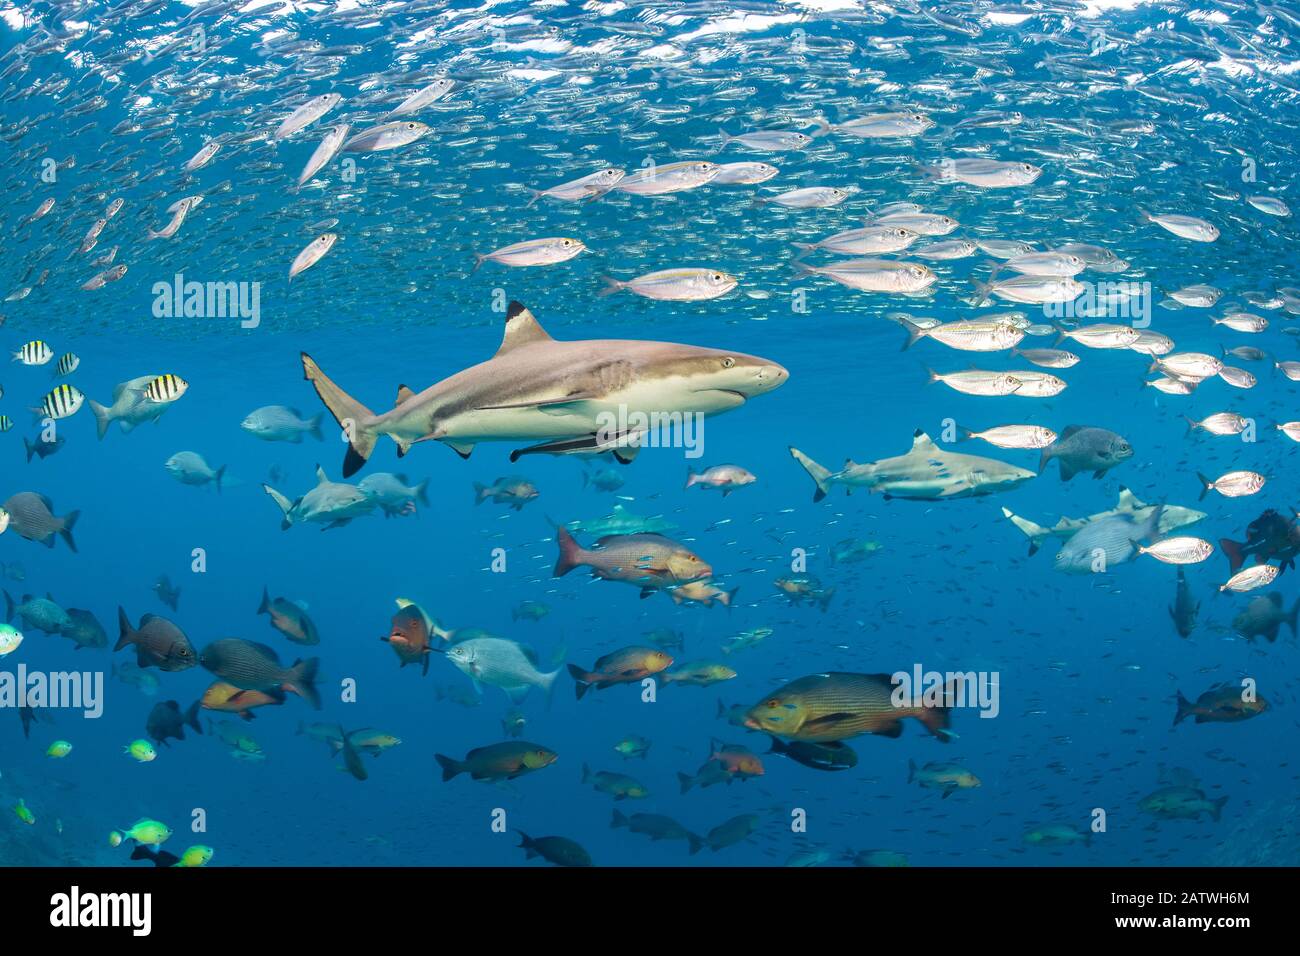 Le requin de récif de la pointe noire (Carcharhinus melanopterus) naine à travers les écoles de poissons. Misool, Raja Ampat, Papouasie-Ouest, Indonésie. Mer De Ceram. Océan Pacifique Ouest Tropical. Banque D'Images